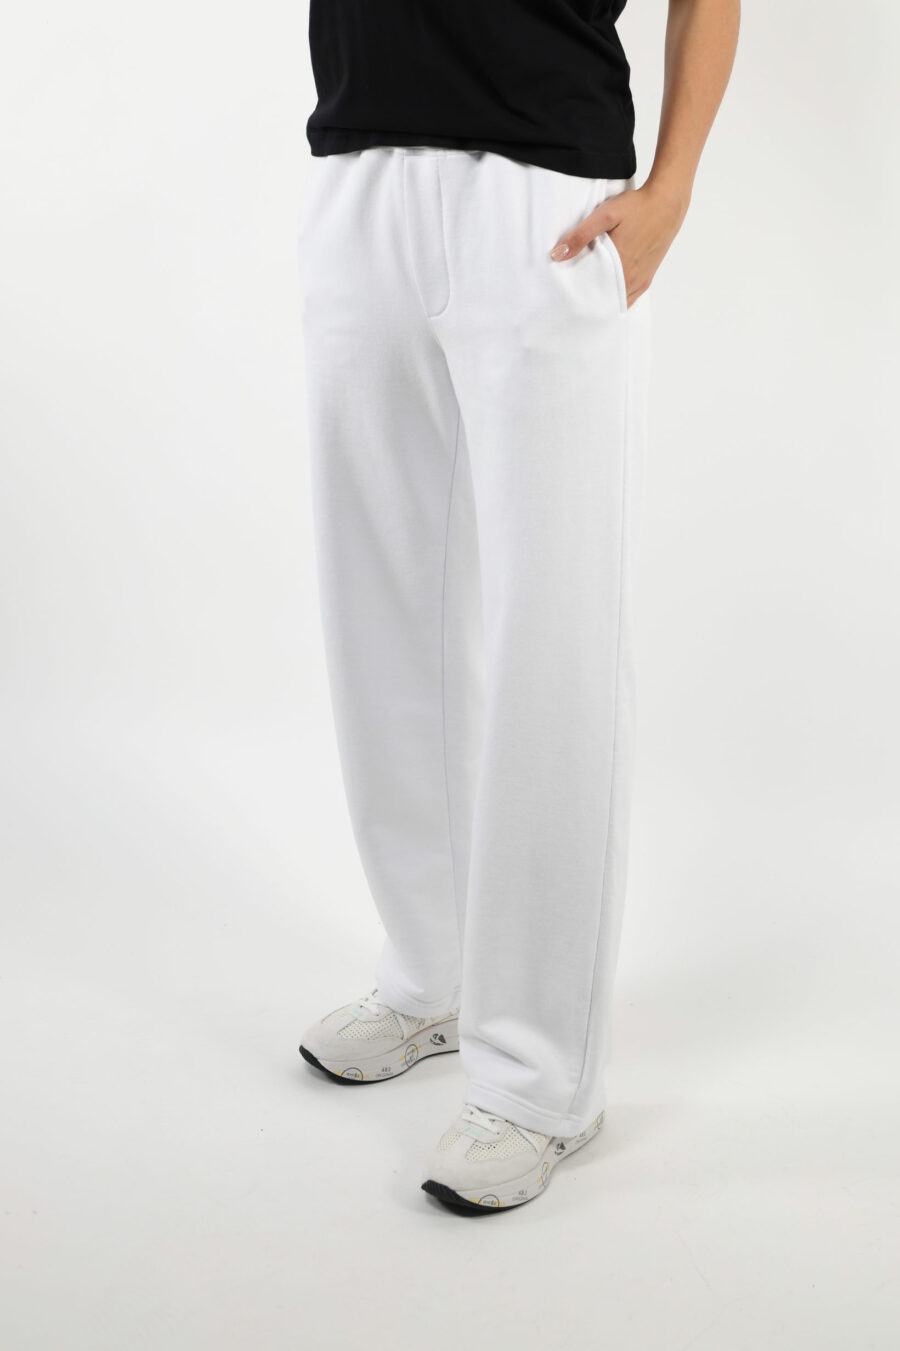 Pantalón blanco ancho con logo - 109741